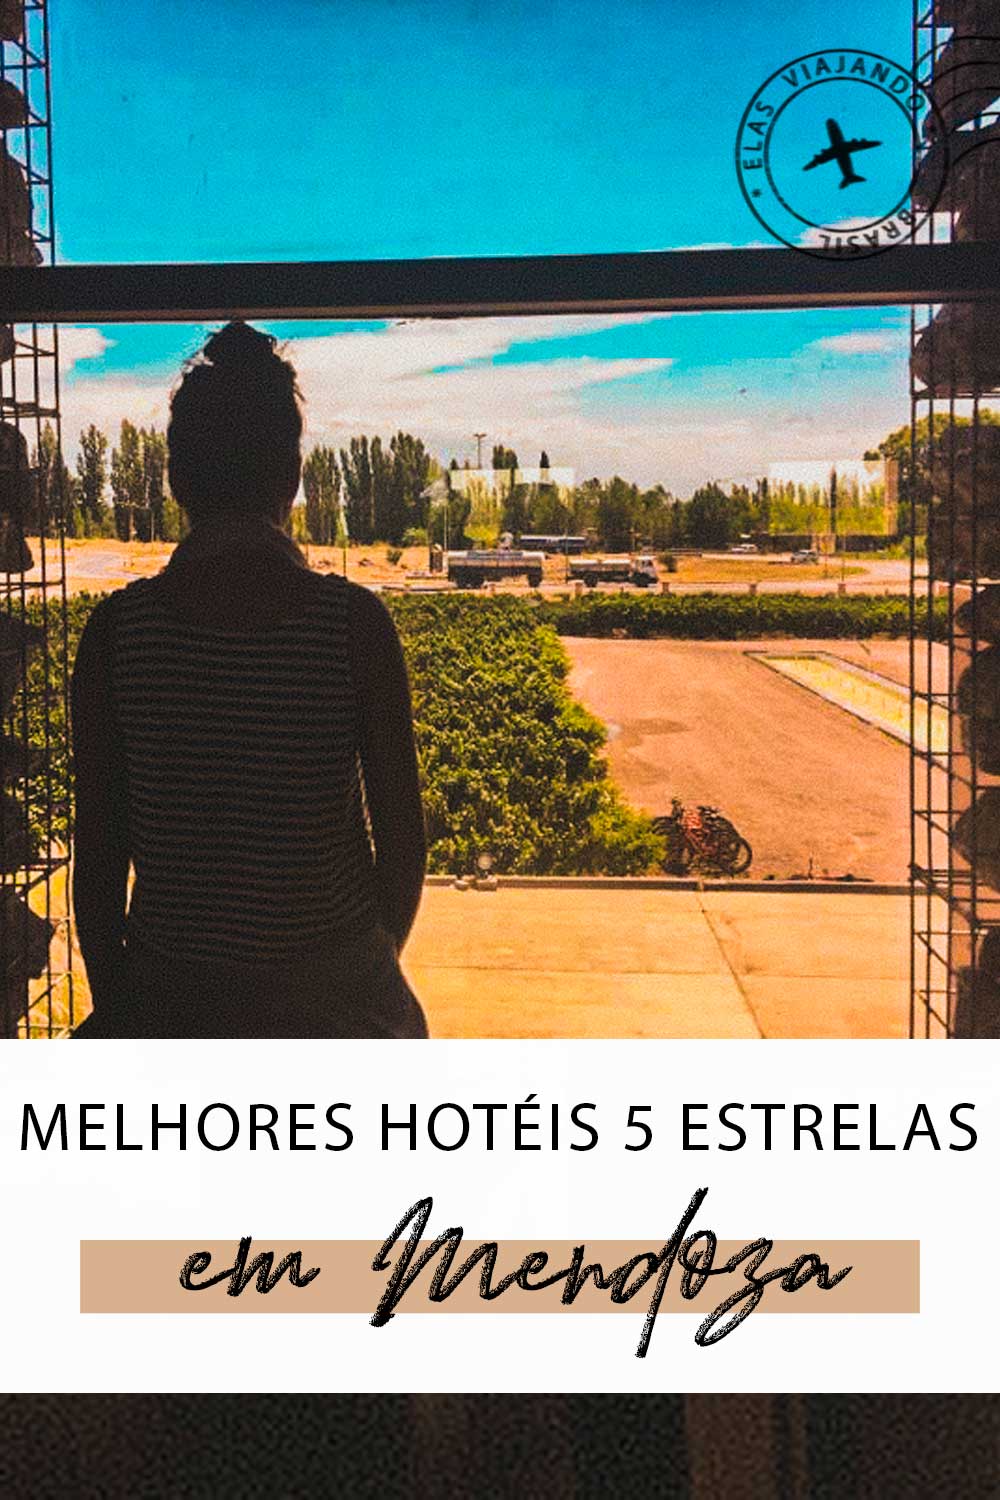 Hotel 5 estrelas em Mendoza